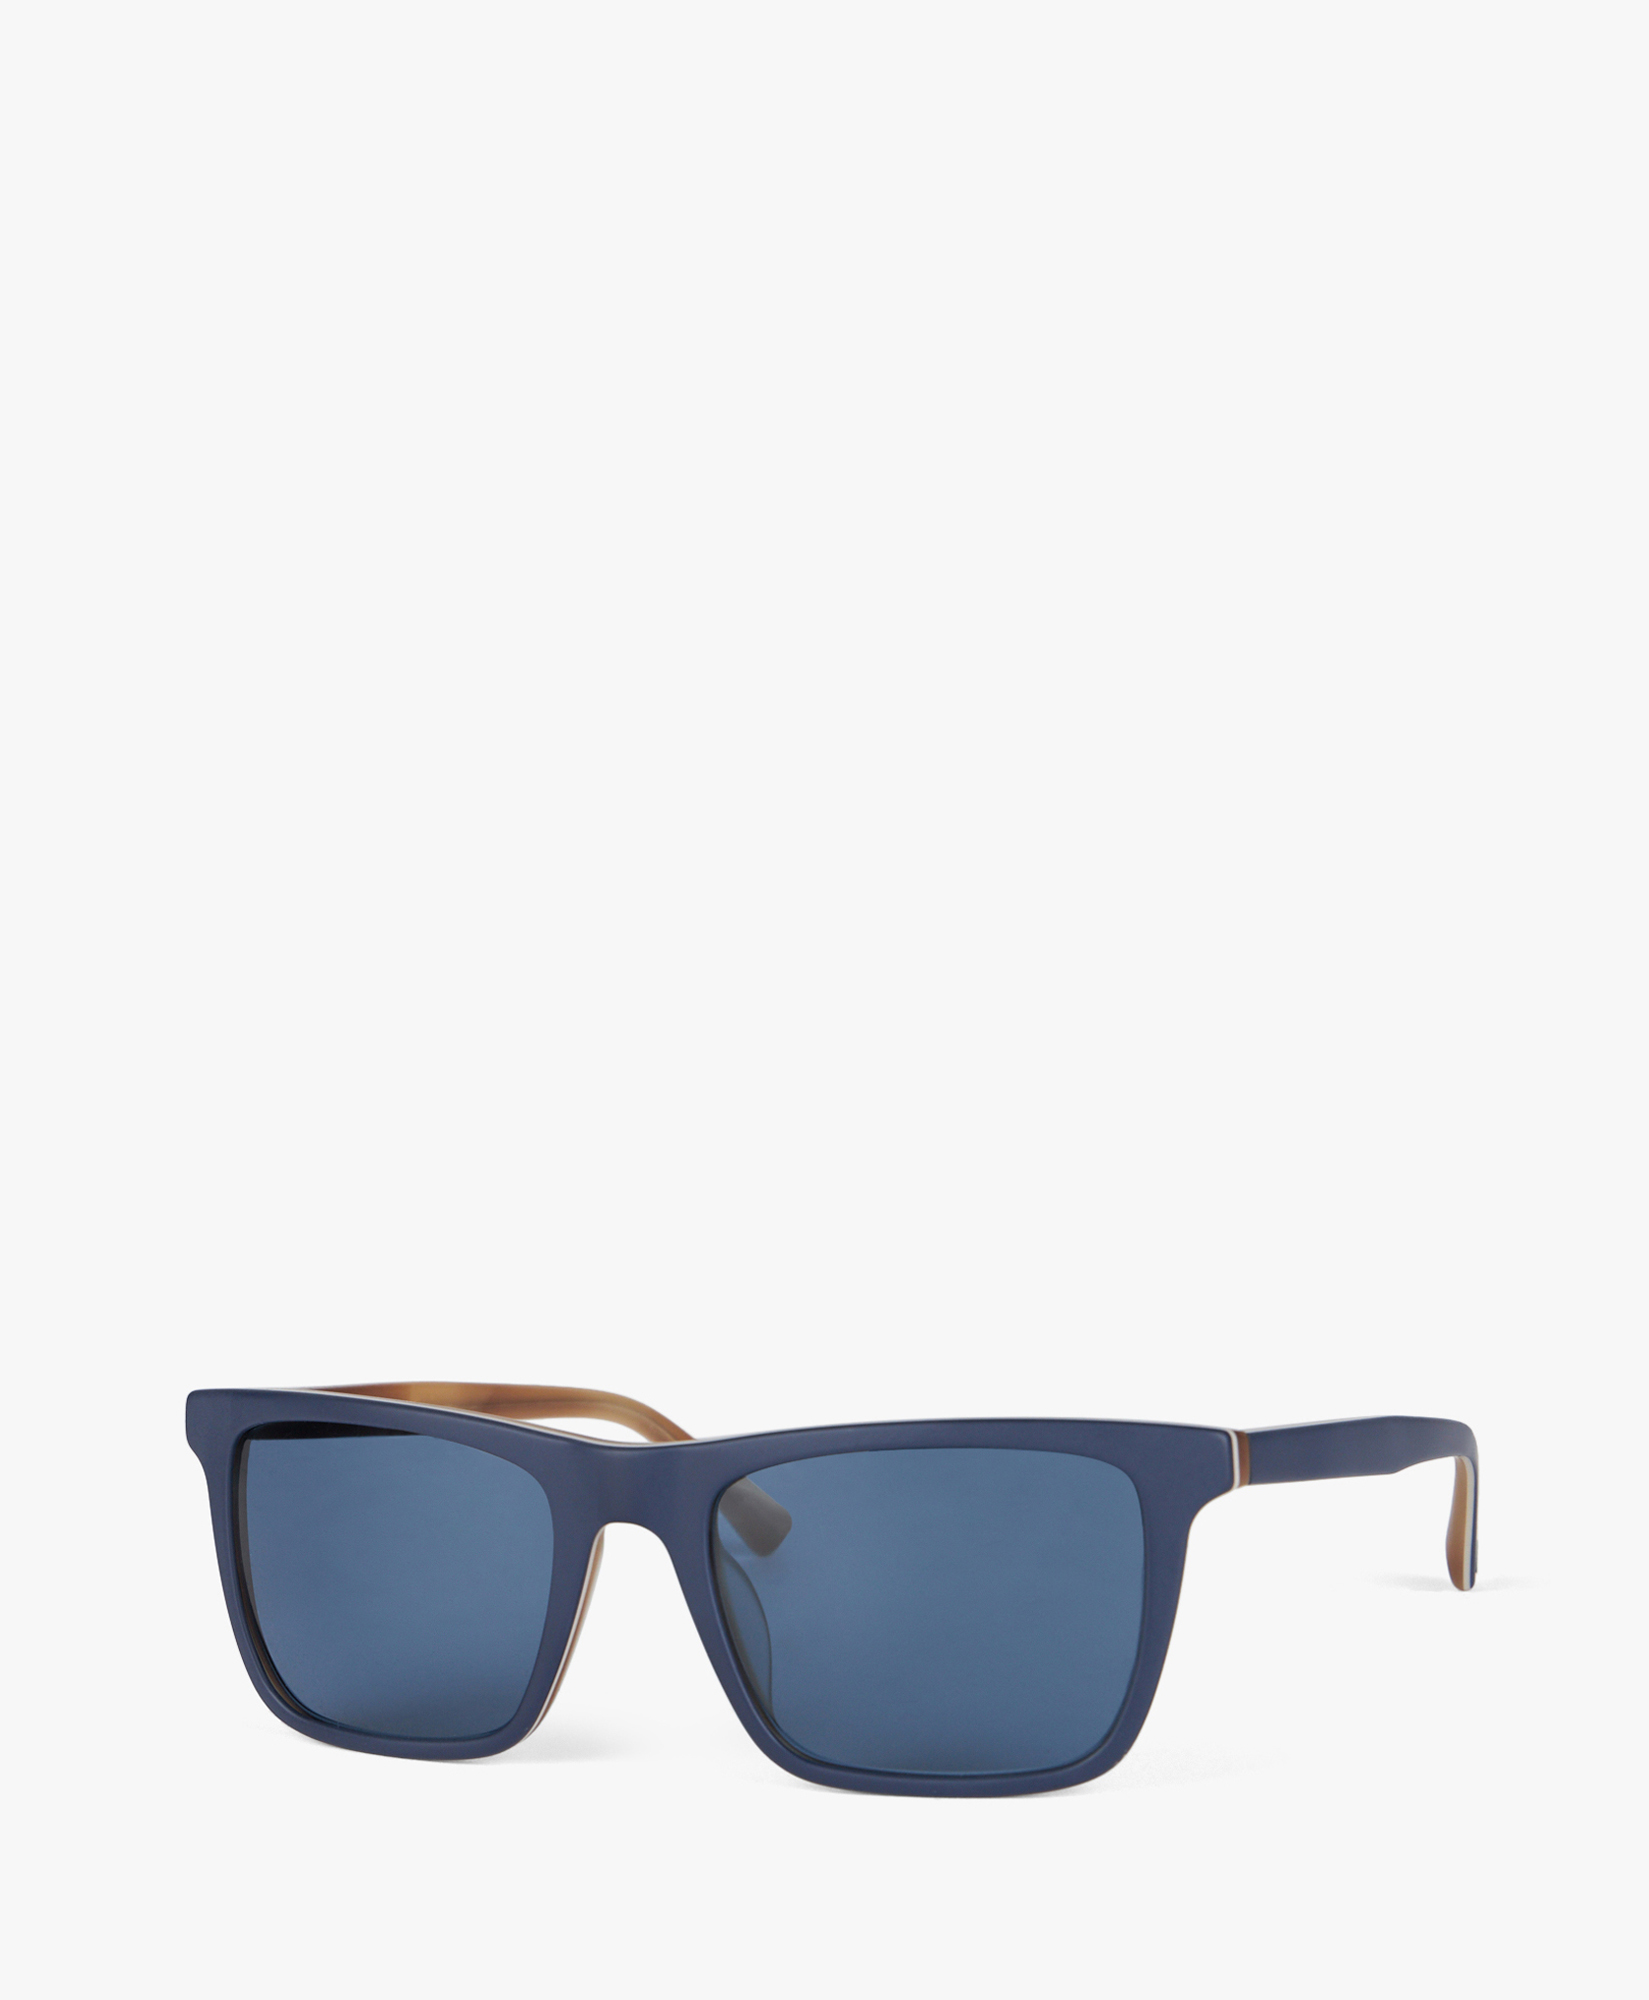 Blue Square Sunglasses - Uomo Occhiali Da Sole Blue One Size